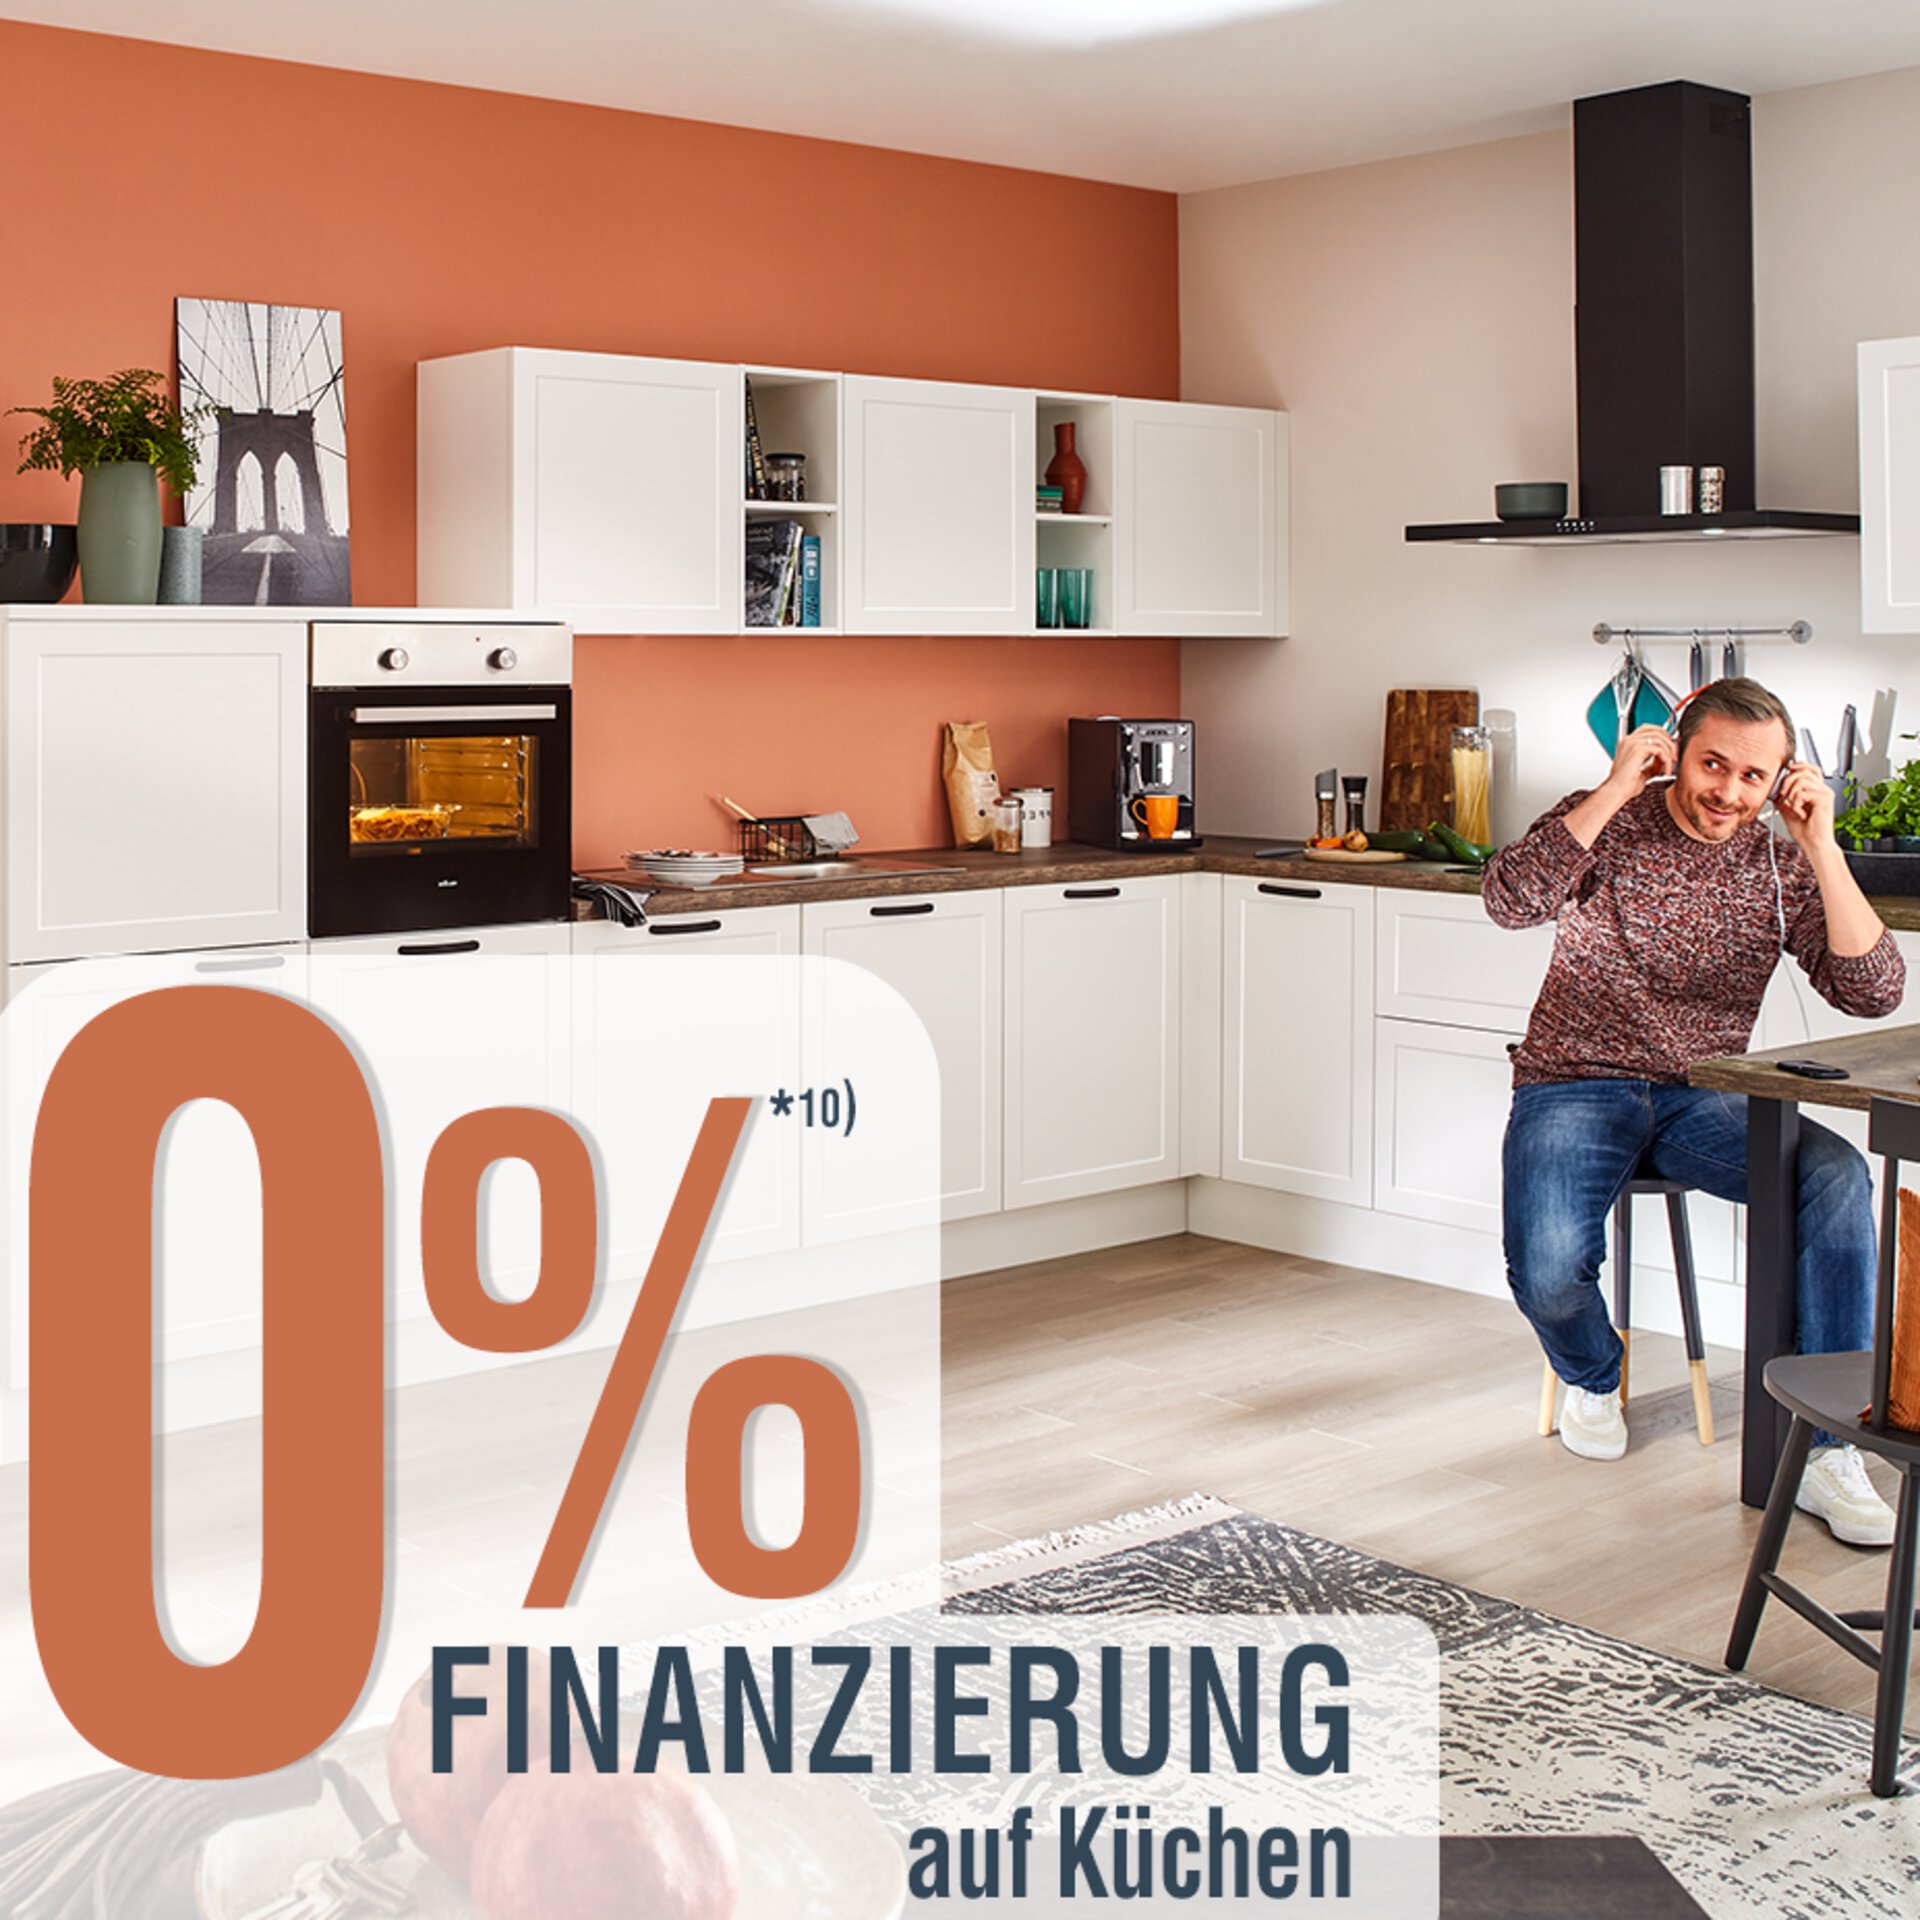 0% Finanzierung auf Küchen